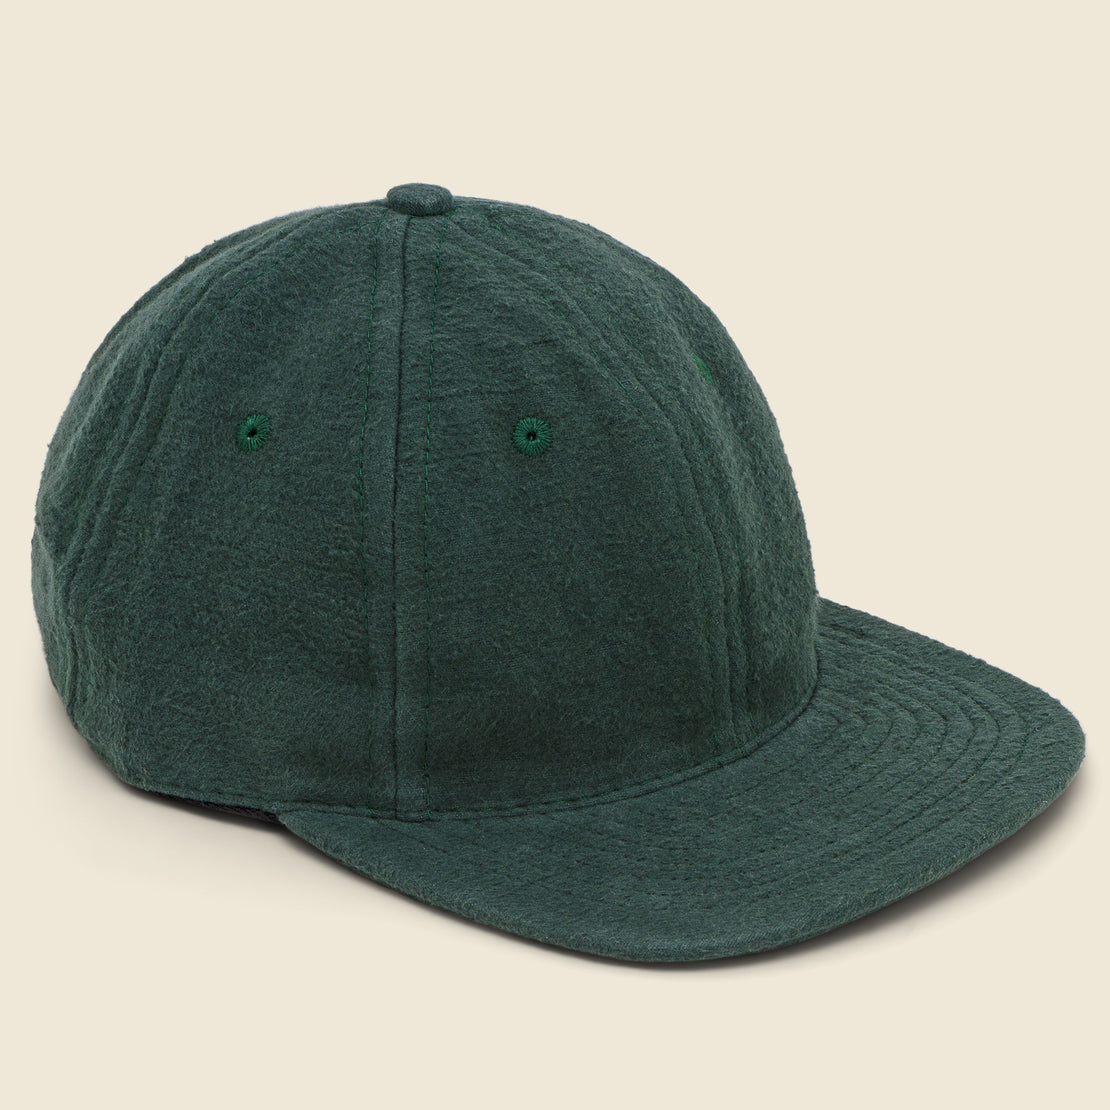 Save Khaki Chamois Baseball Cap - Evergreen